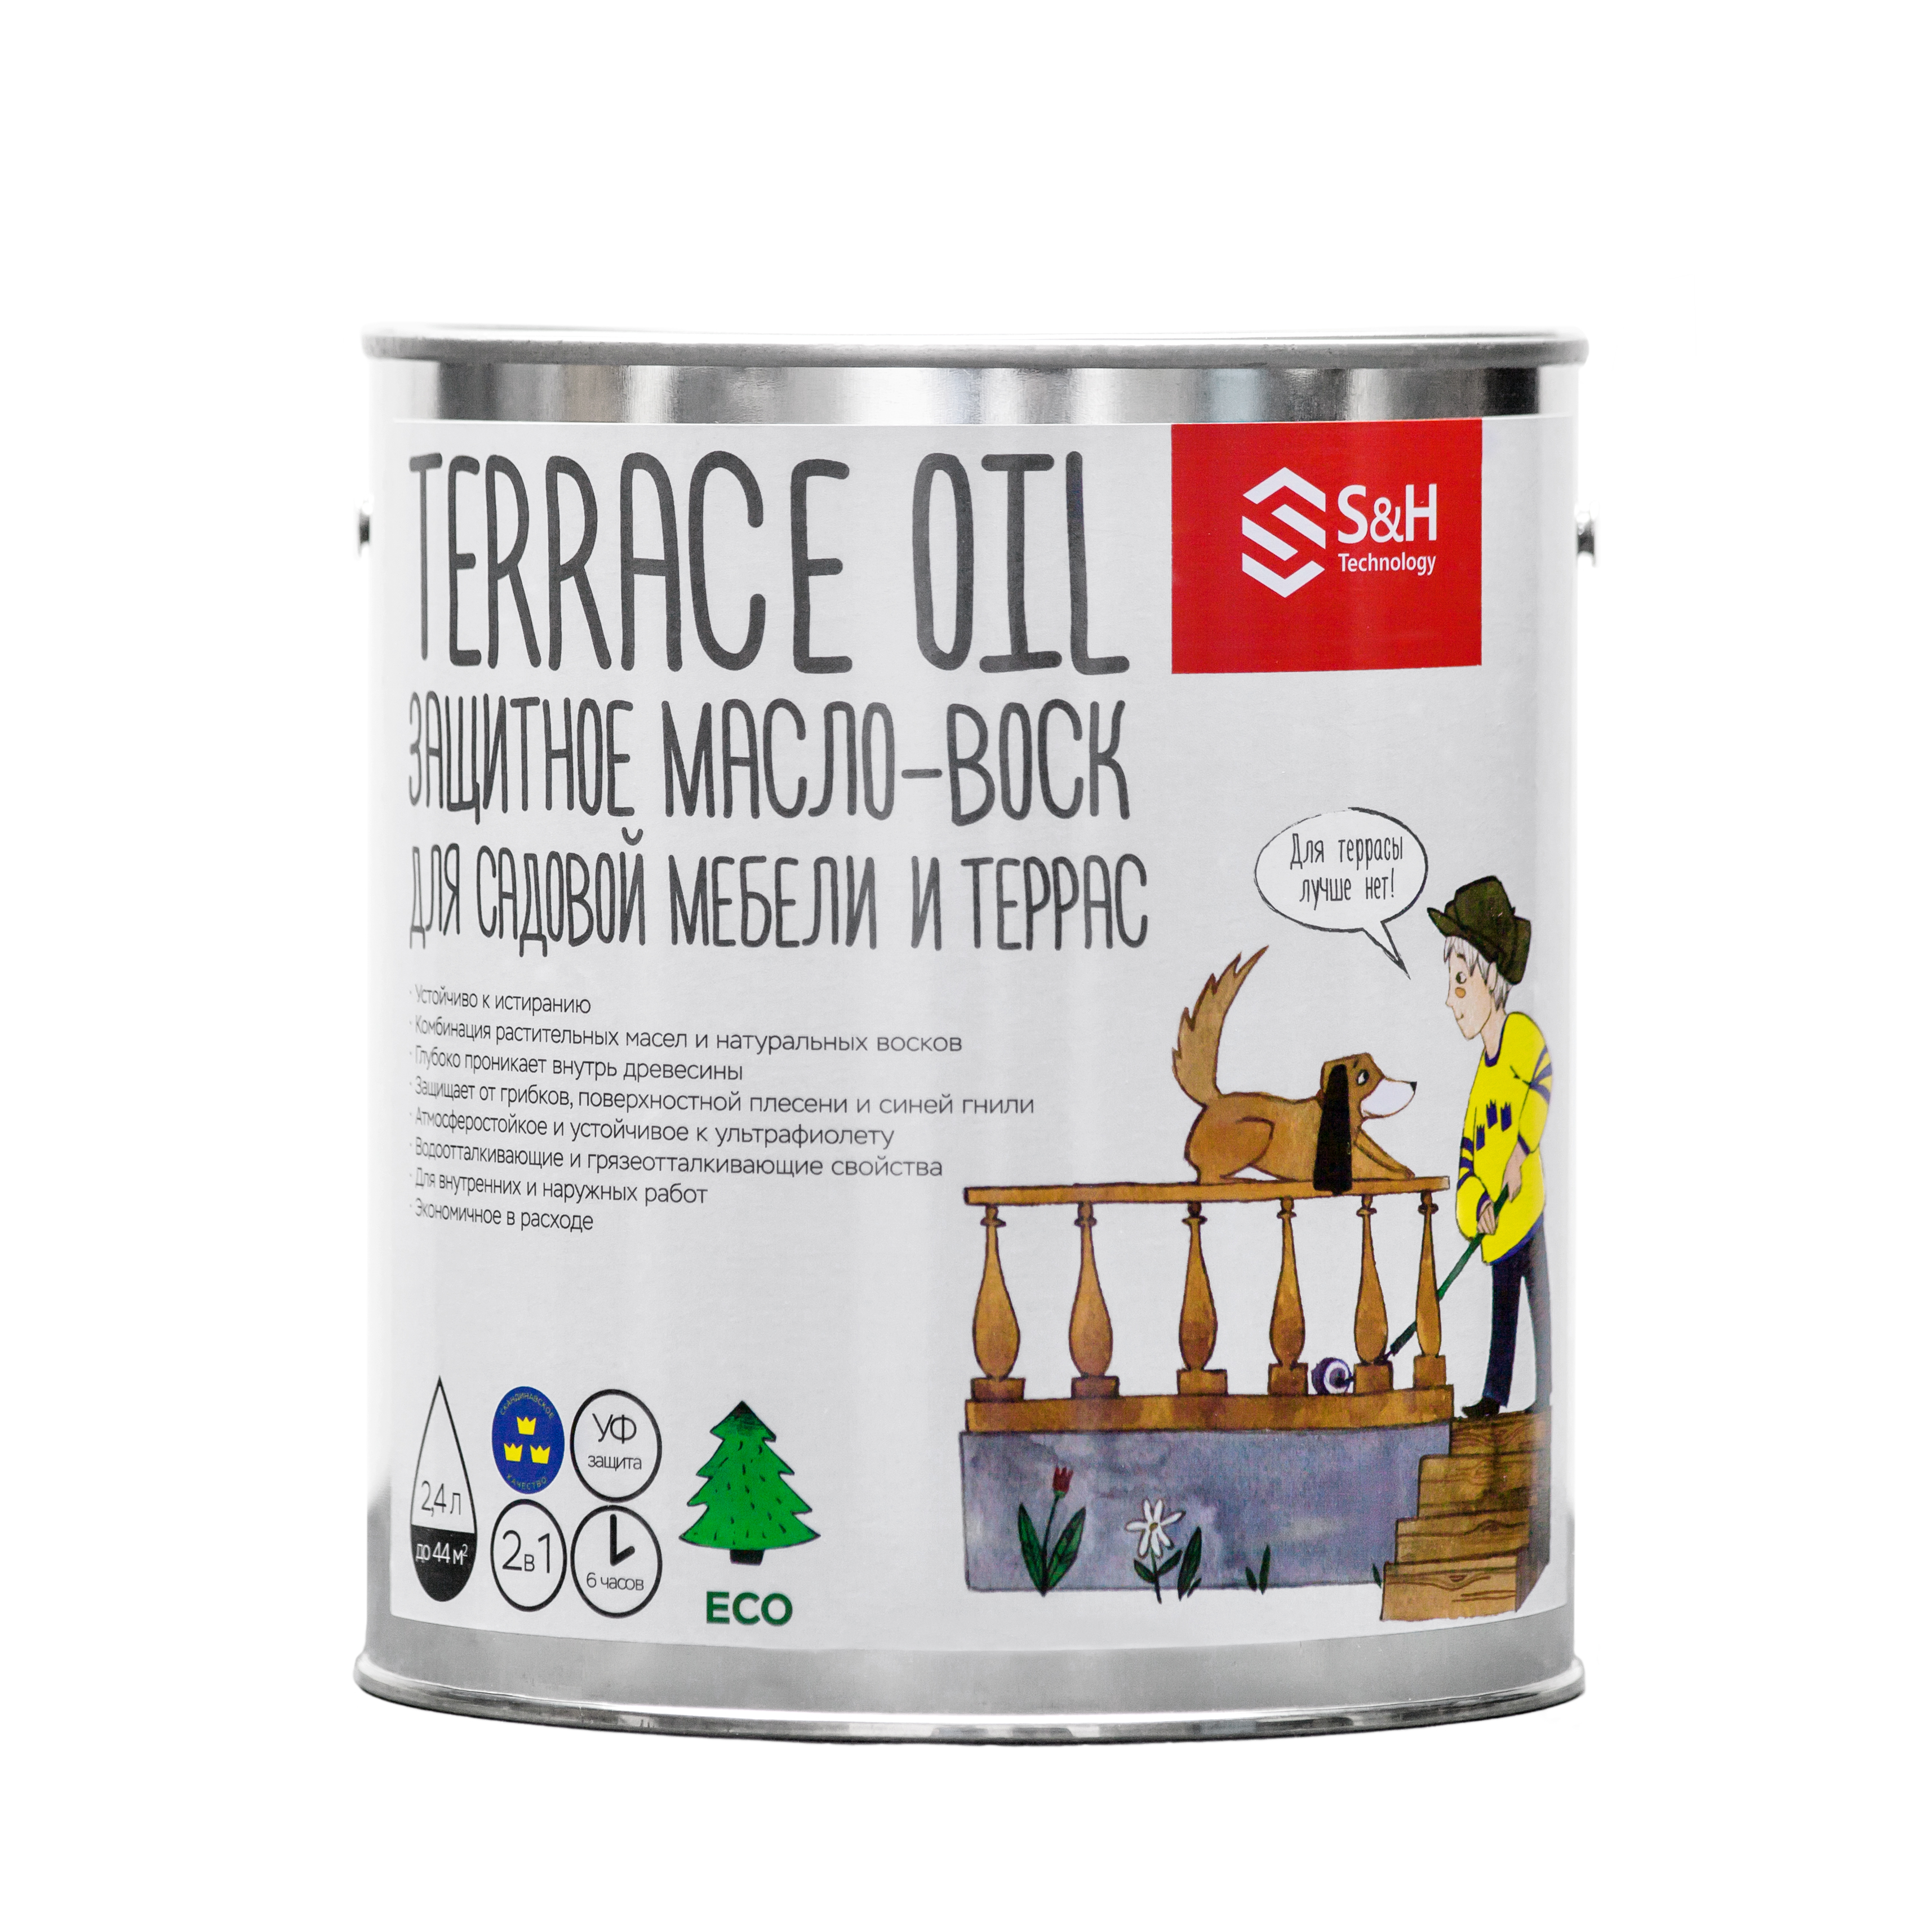 TERRACE OIL 2в1 защитное масло-воск для террас и мебели 2,4 л